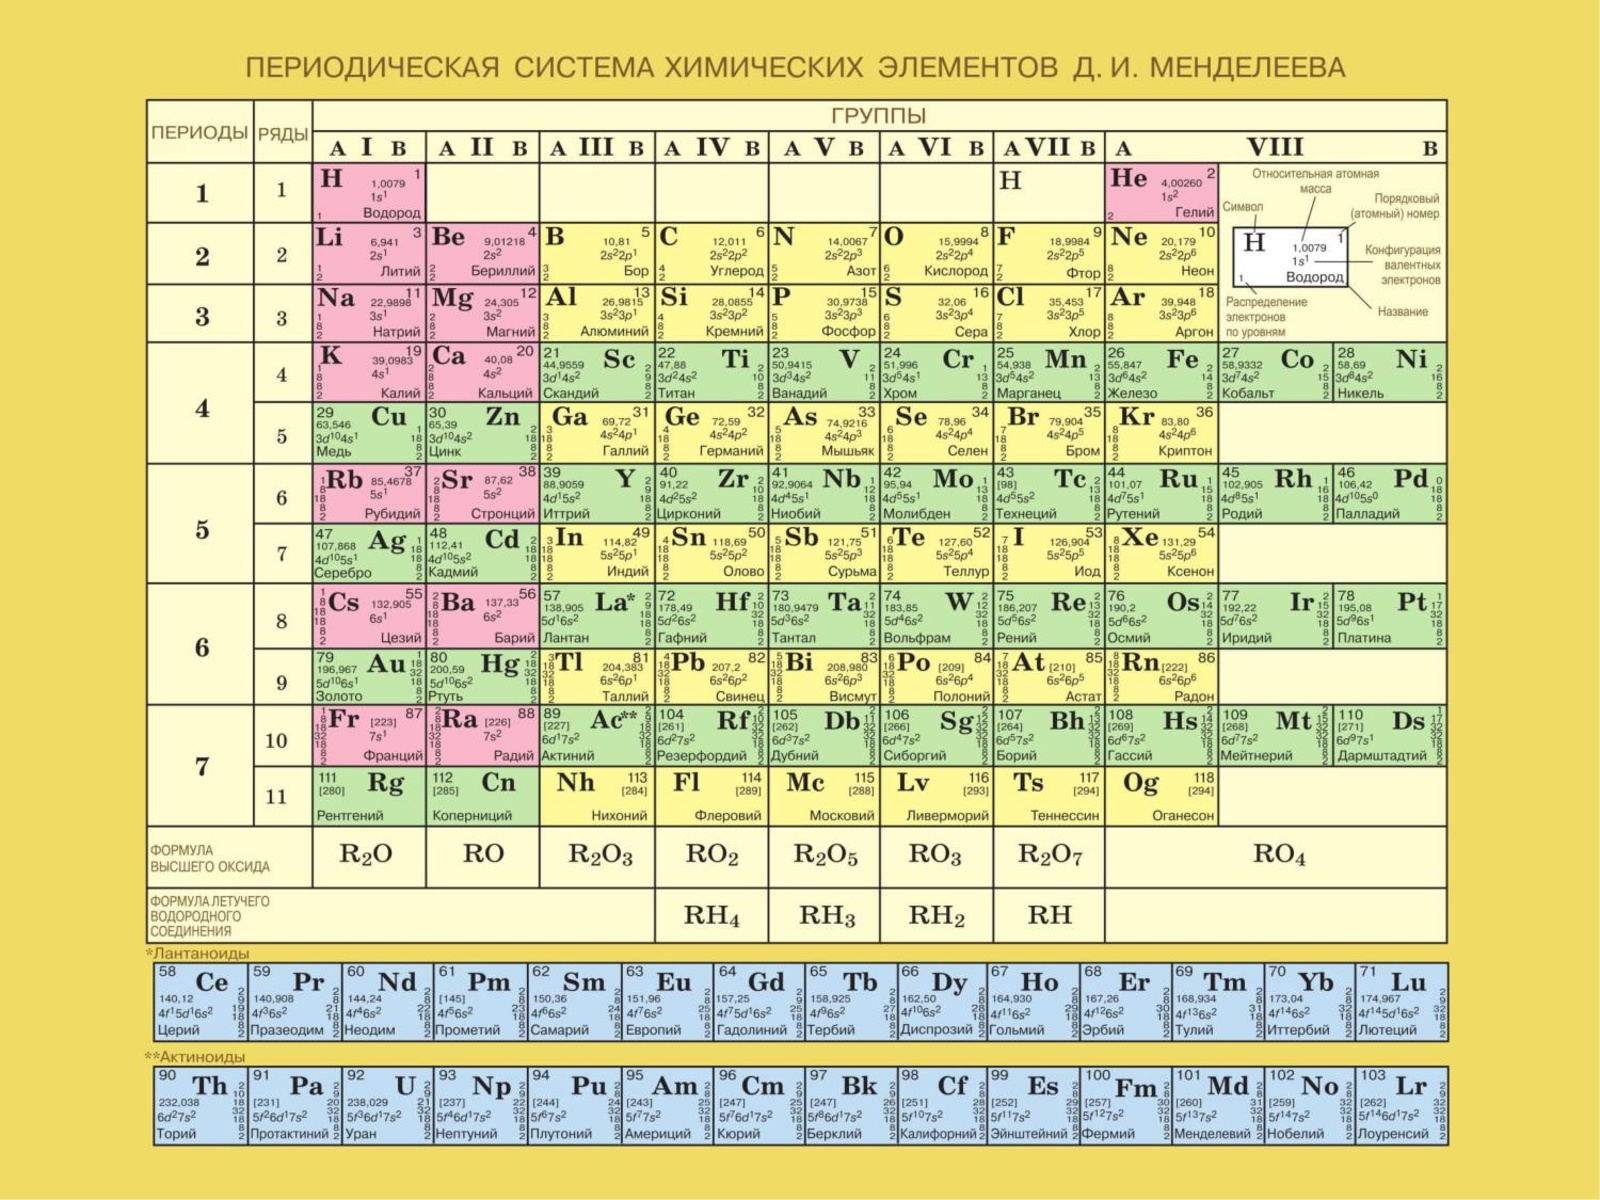 Th химический элемент. Современная таблица Менделеева 118 элементов. Периодическая система химических элементов Менделеева 8. Периодическая таблица Менделеева на а4.